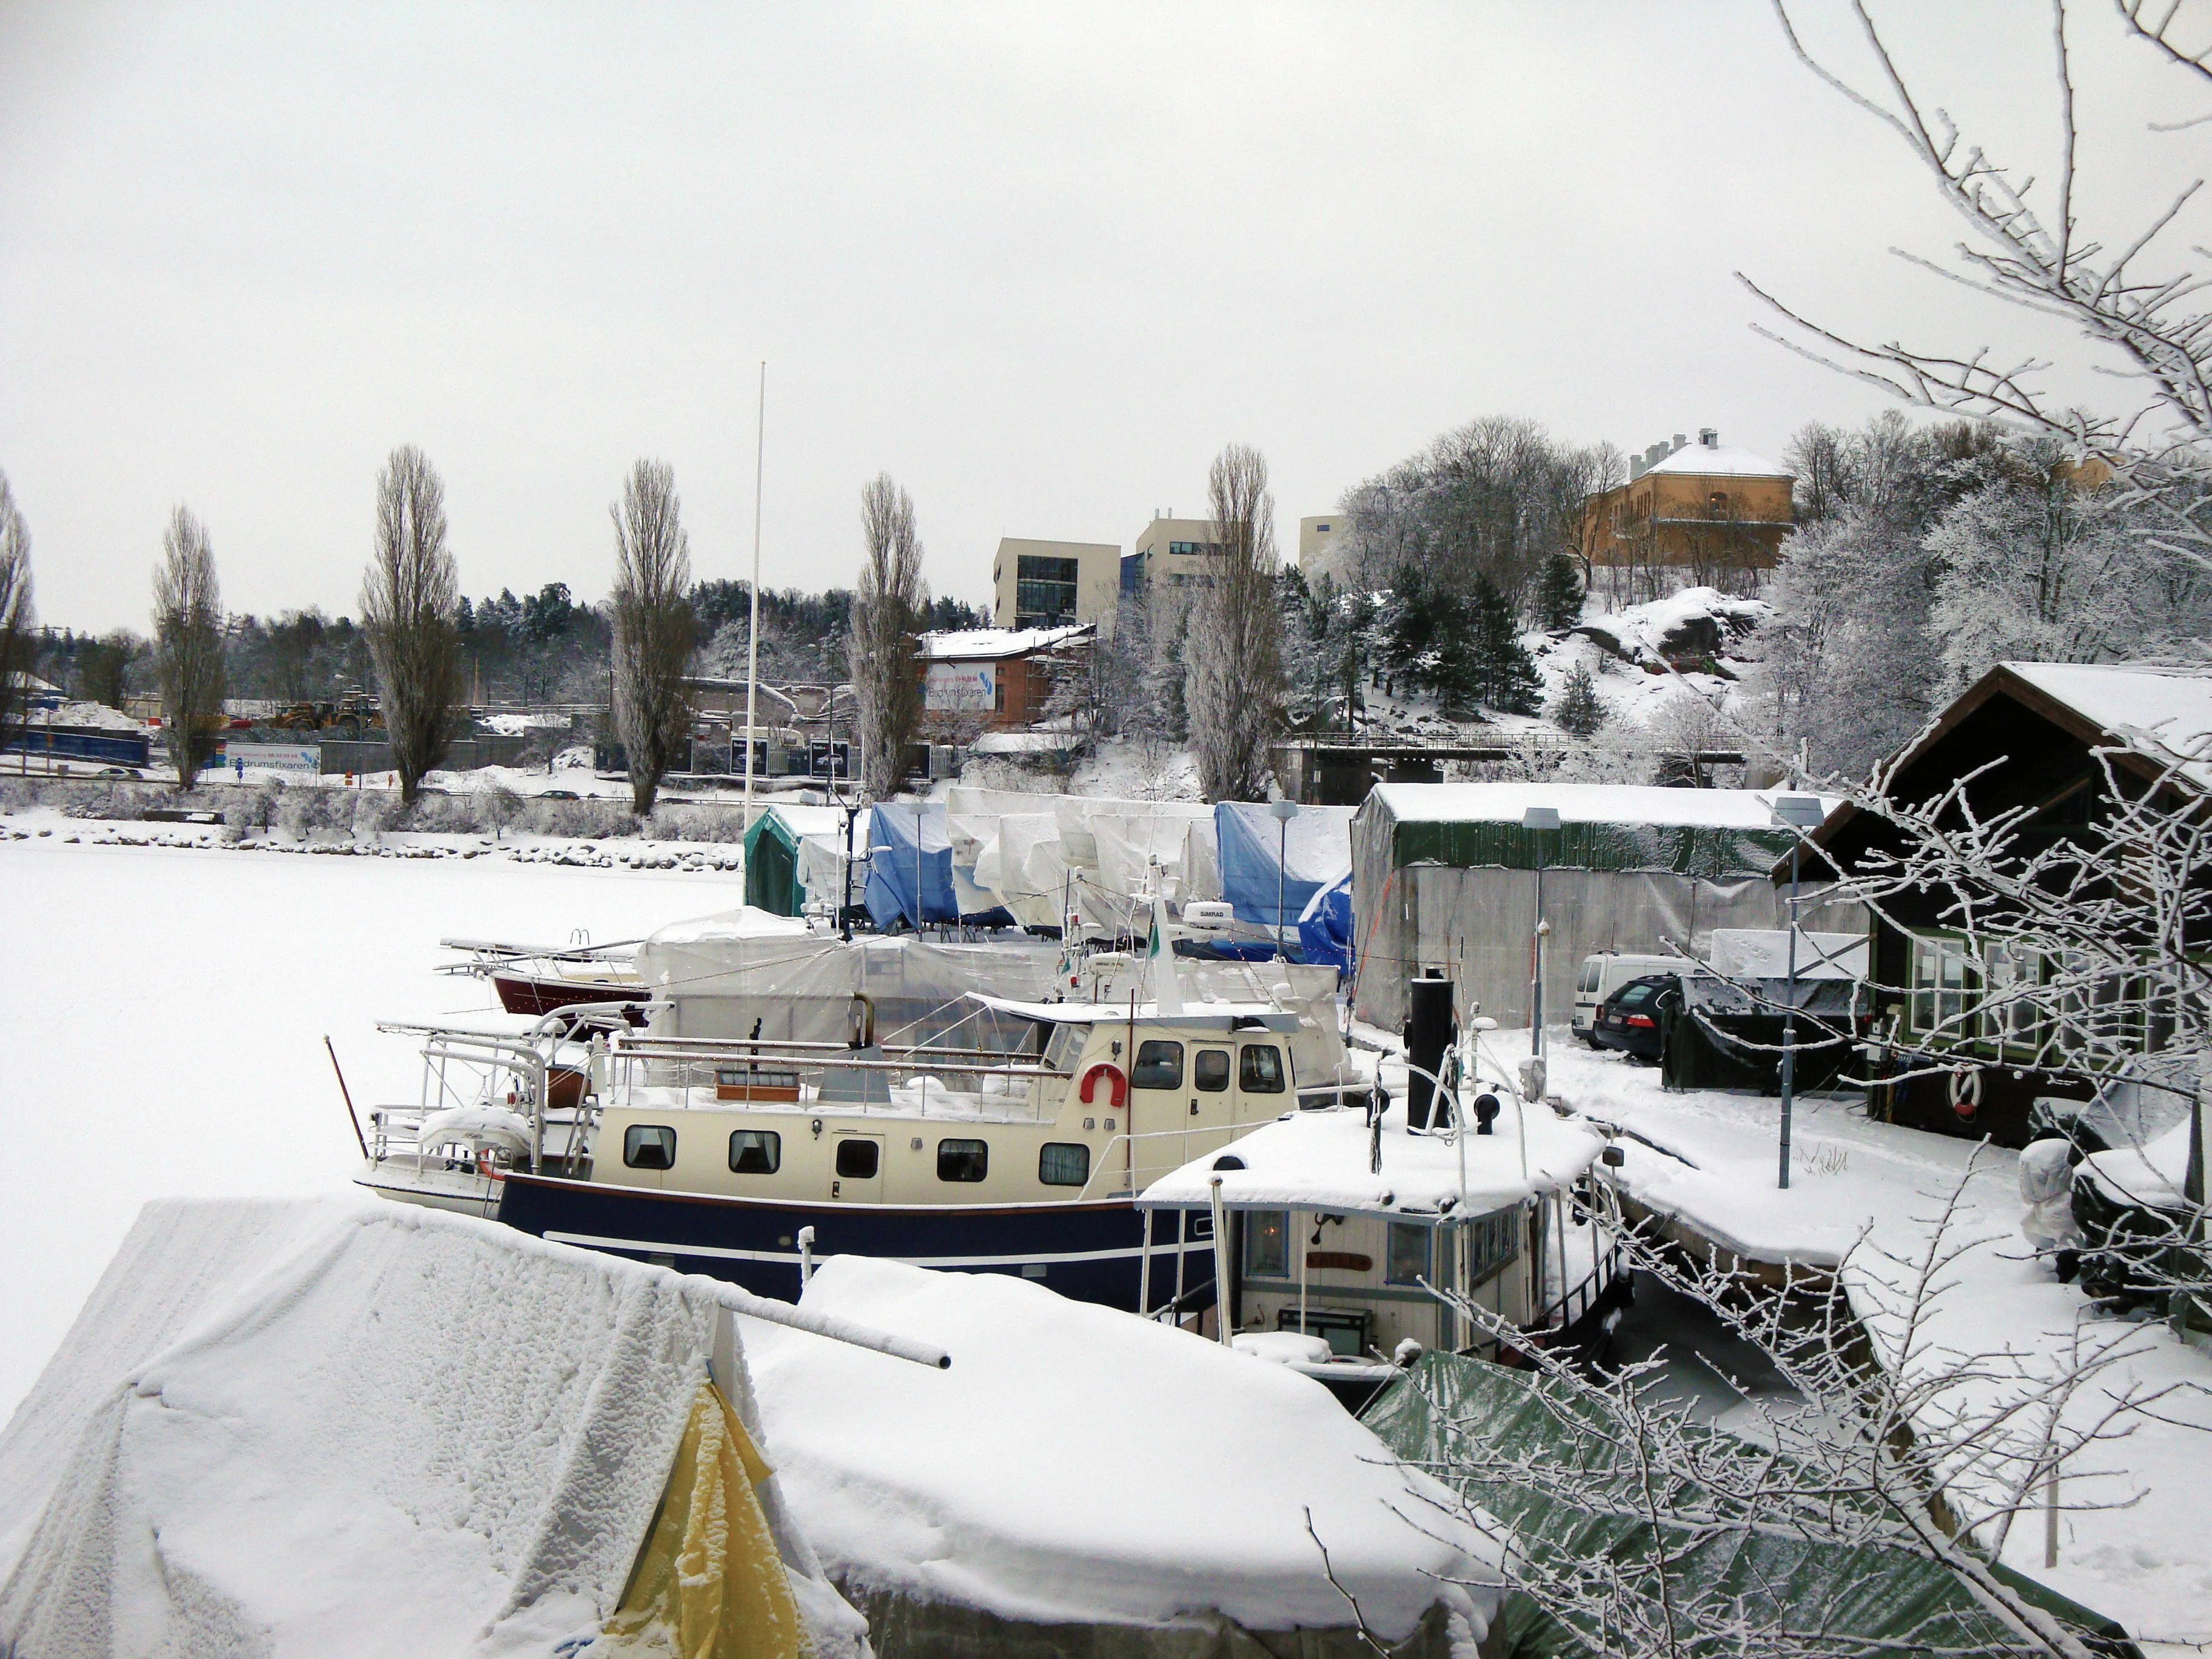 Stockholm in winter - Ekoparken